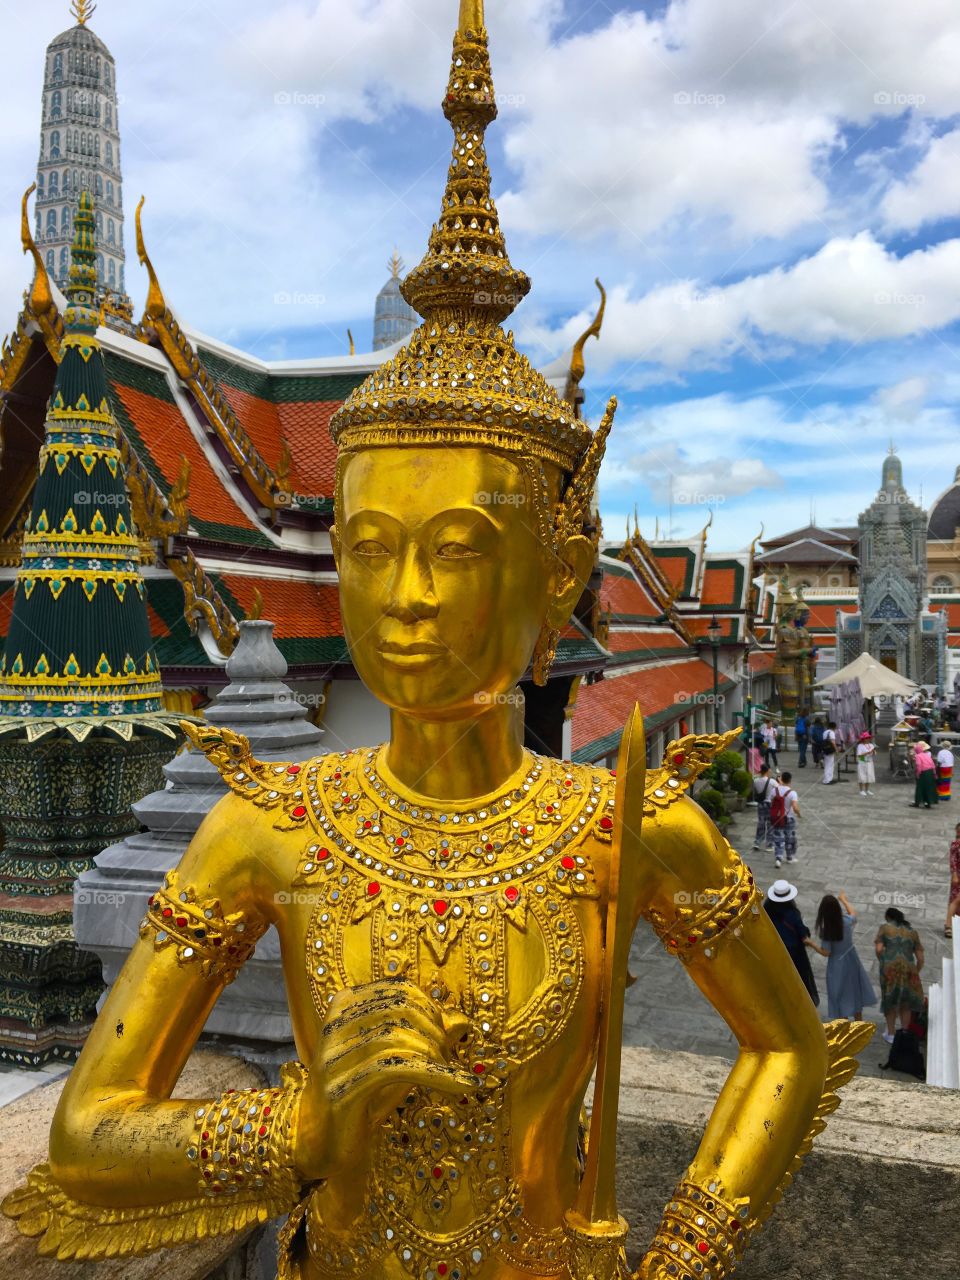 Grand Palace / Bangkok Thailand 58